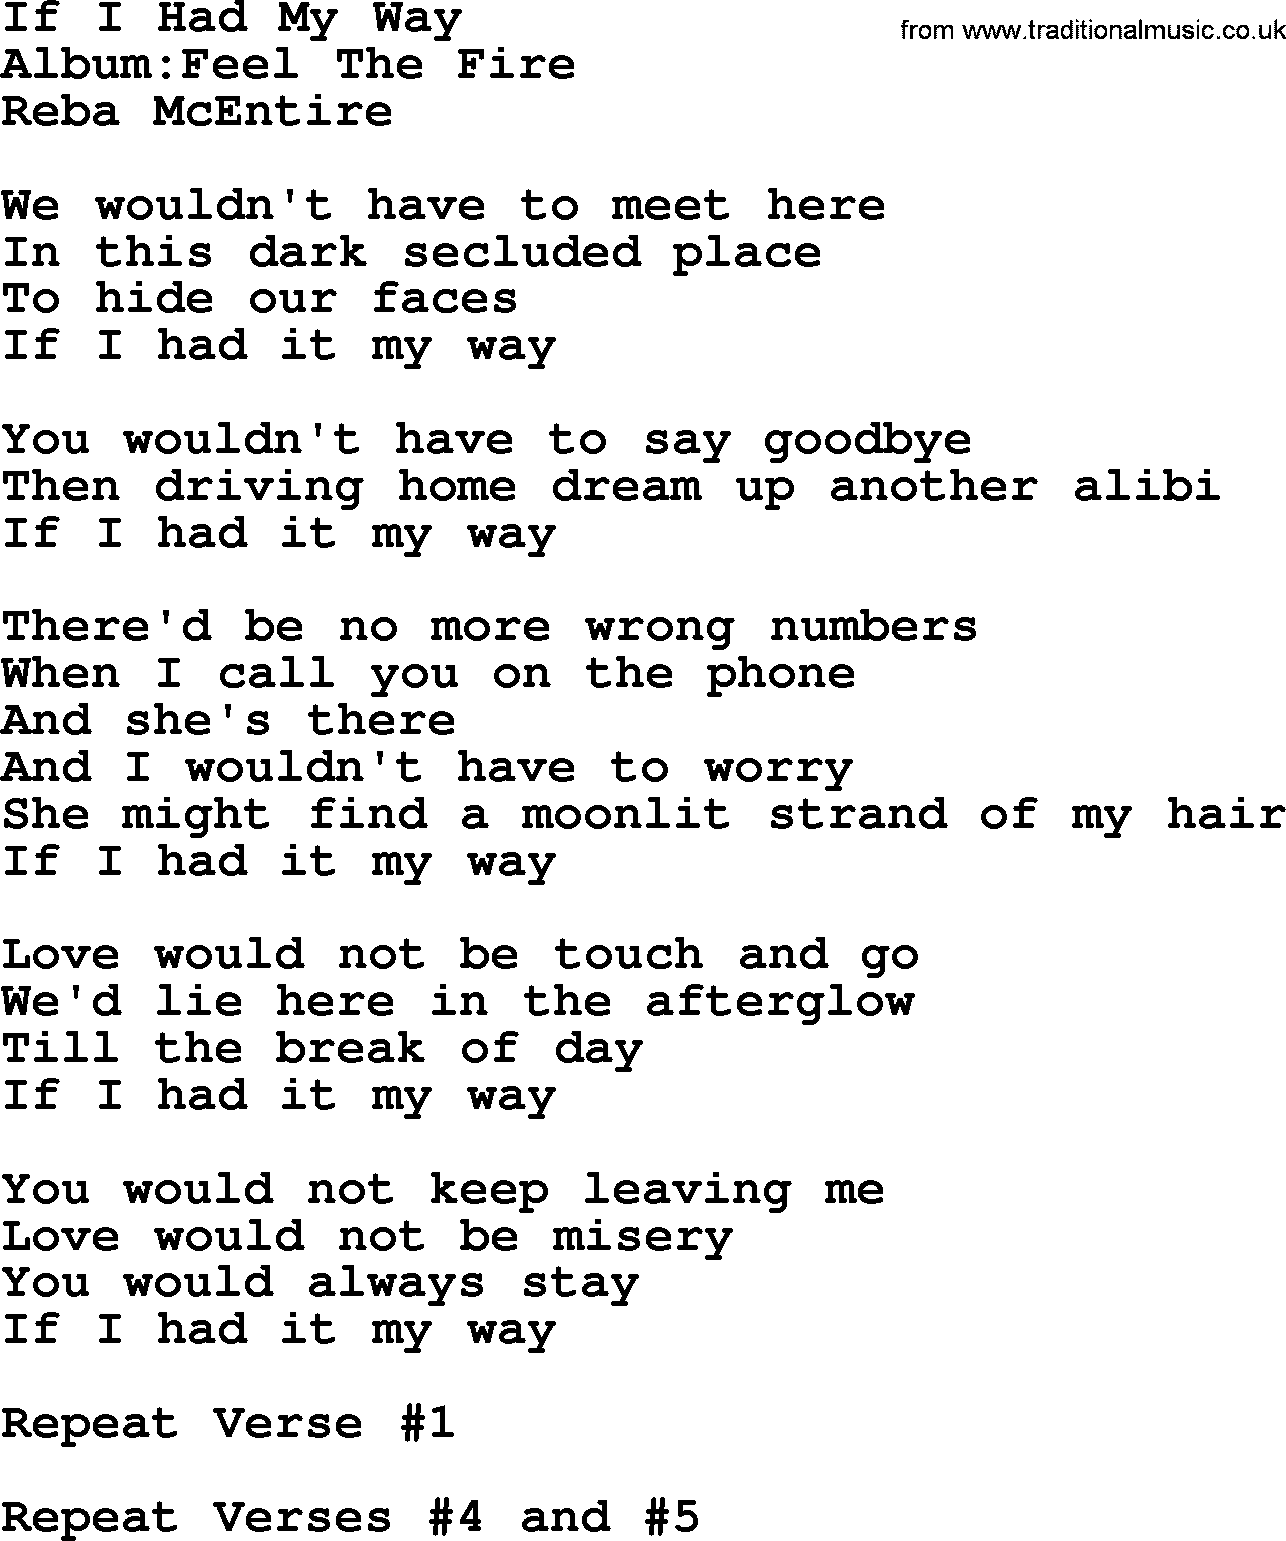 Reba McEntire song: If I Had My Way lyrics